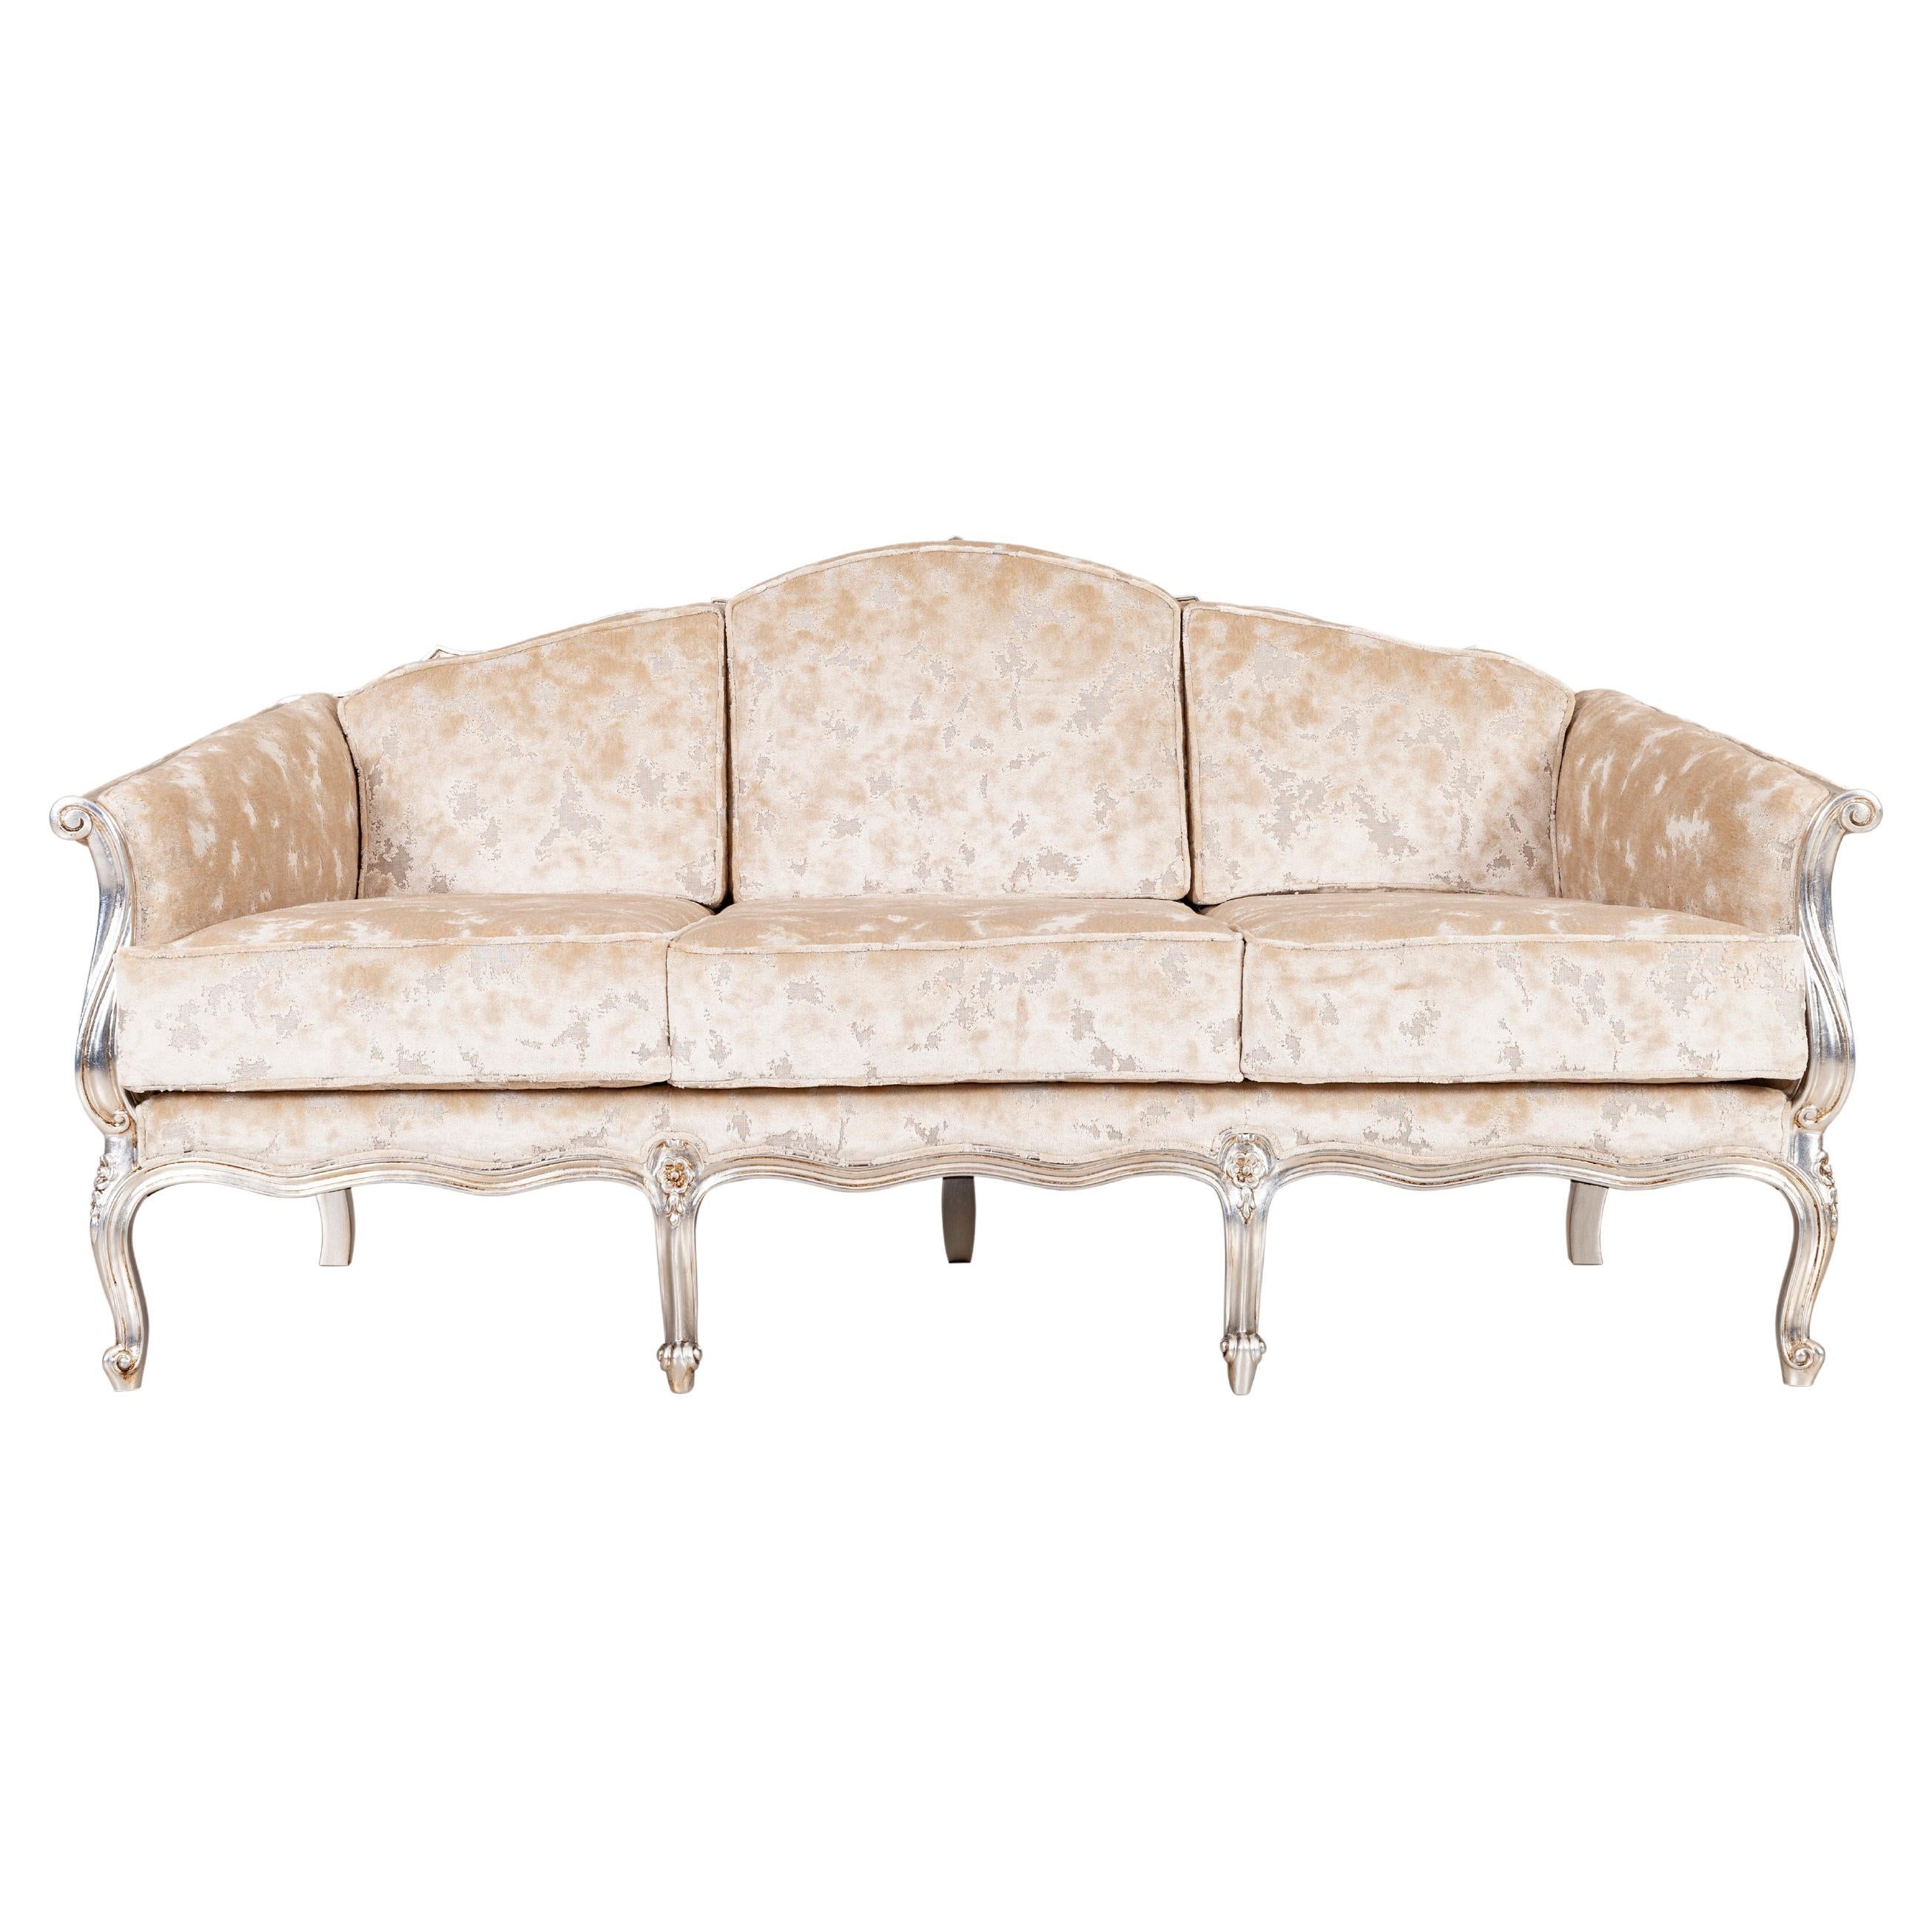 Talha Real Sofa, Neoclassical Collection, handgefertigt in Portugal - Europa von GF Modern.

Das Sofa Talha Real verleiht jedem Wohnbereich einen raffinierten und raffinierten Touch. Das Sofa ist mit beigefarbenem Jacquard-Samt gepolstert und mit